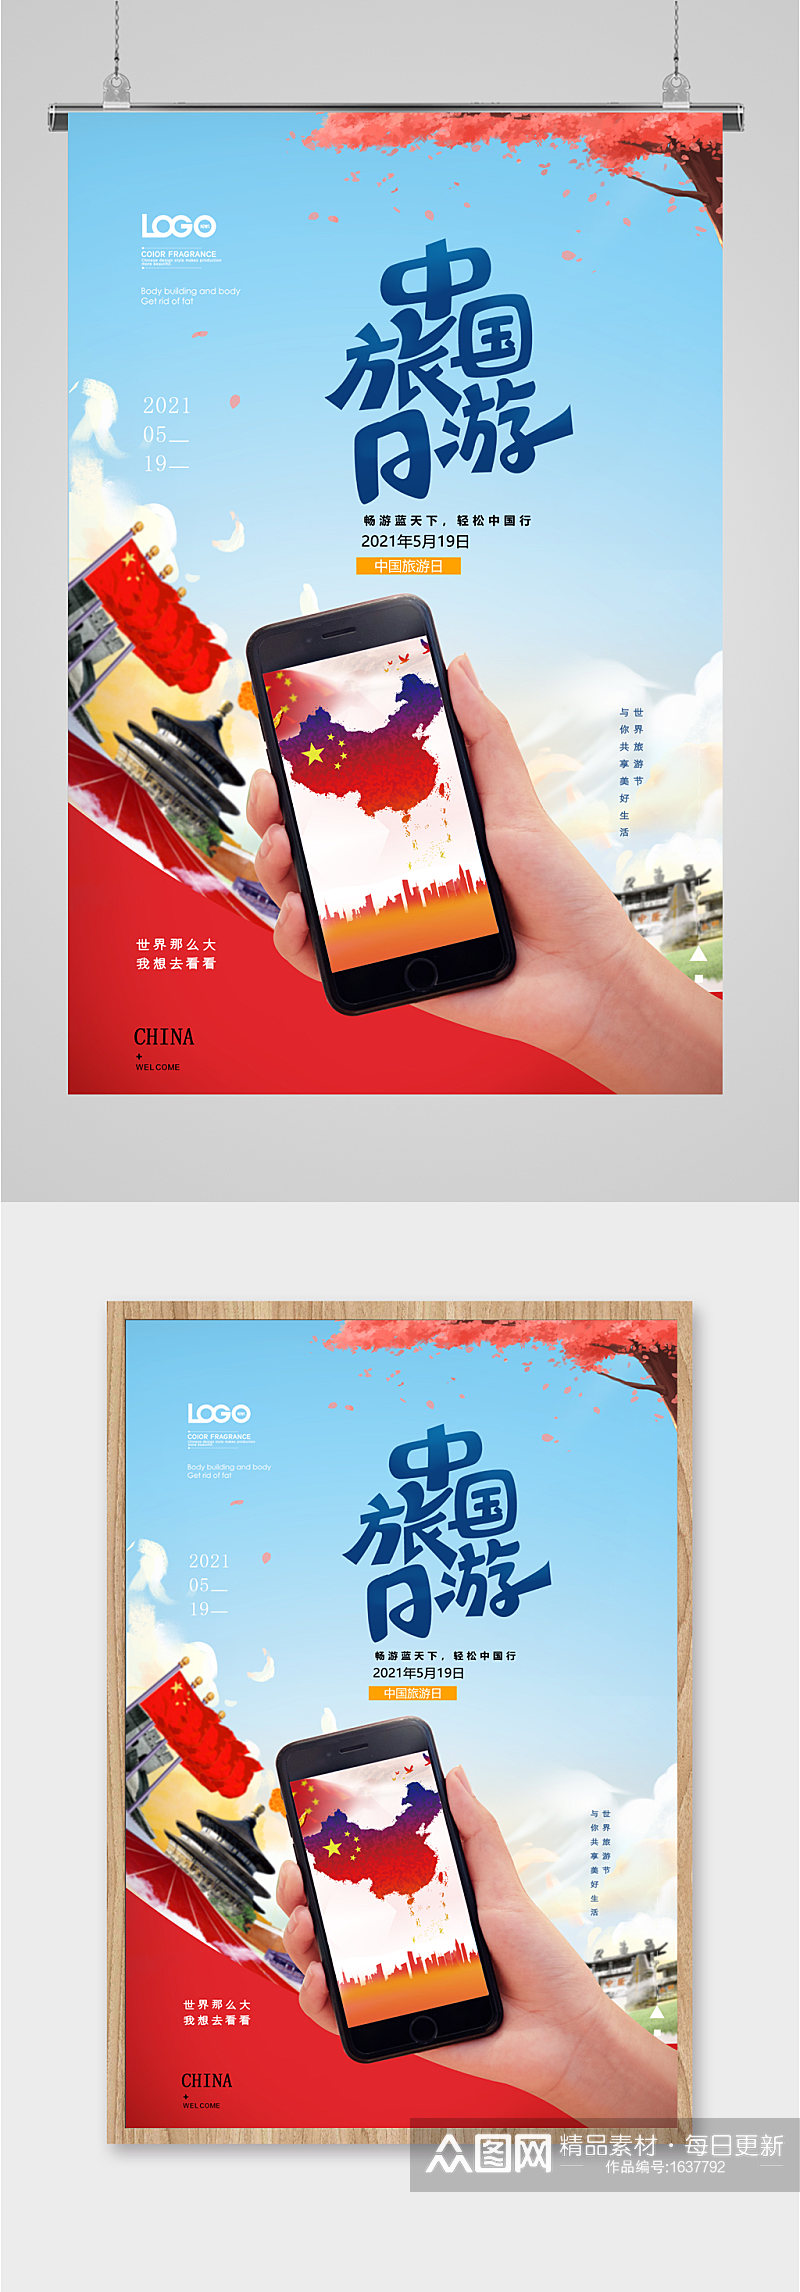 中国旅游日宣传海报素材